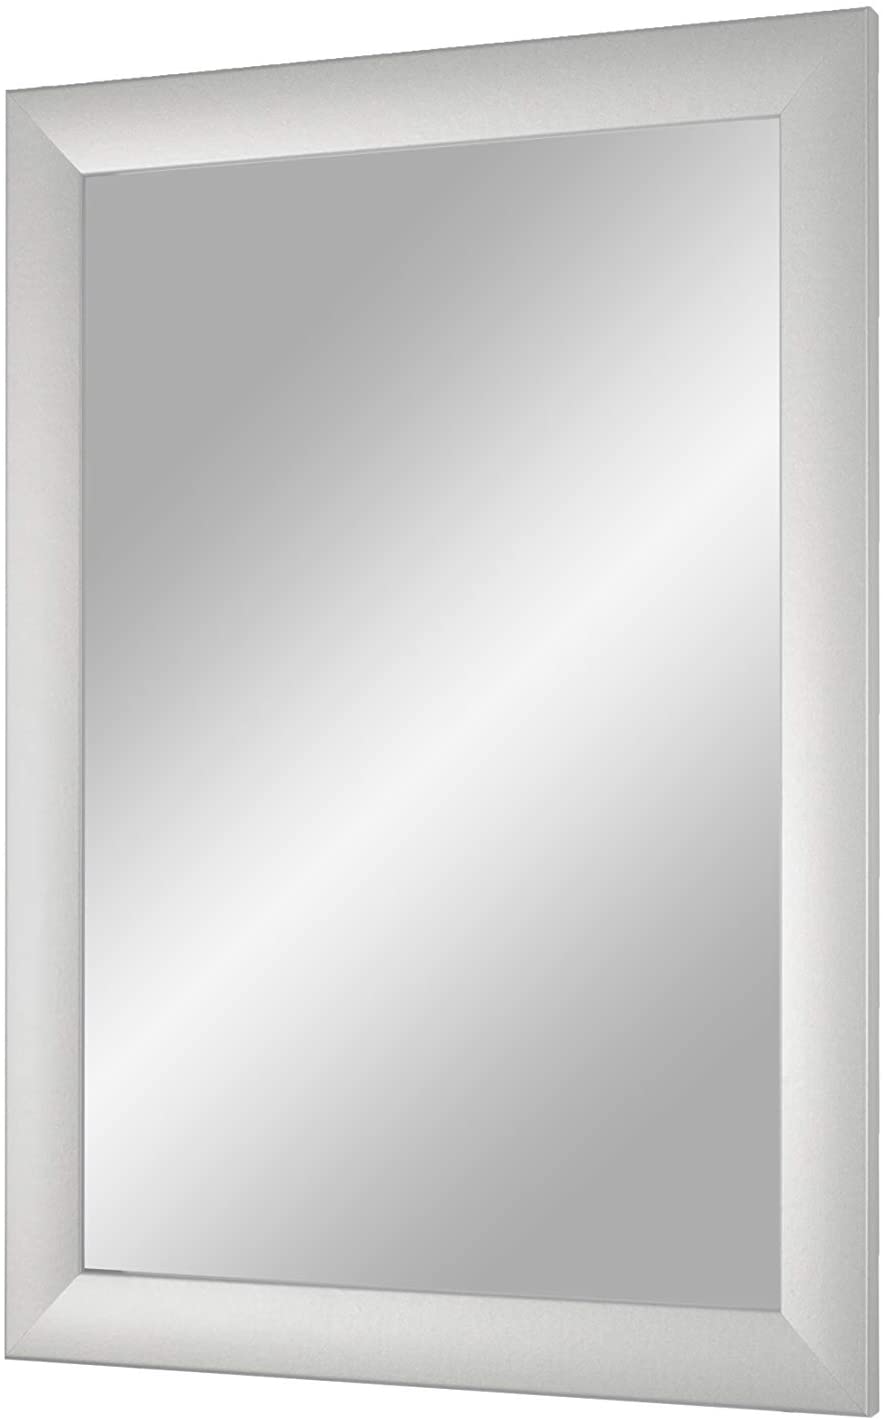 EXCLUSIV Wandspiegel nach Maß (Silber-matt), Maßgefertigter Spiegelrahmen inkl. Spiegel und stabiler Rückwand mit Aufhängern